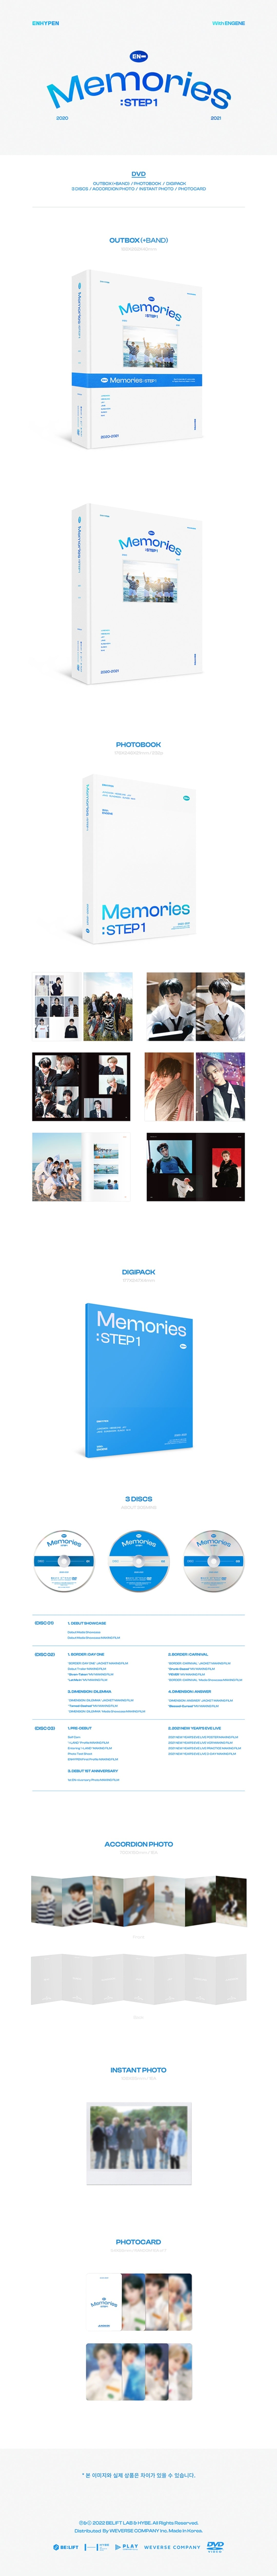 ENHYPEN - Pieces of Memories & Memories: Step 1 DVD セット